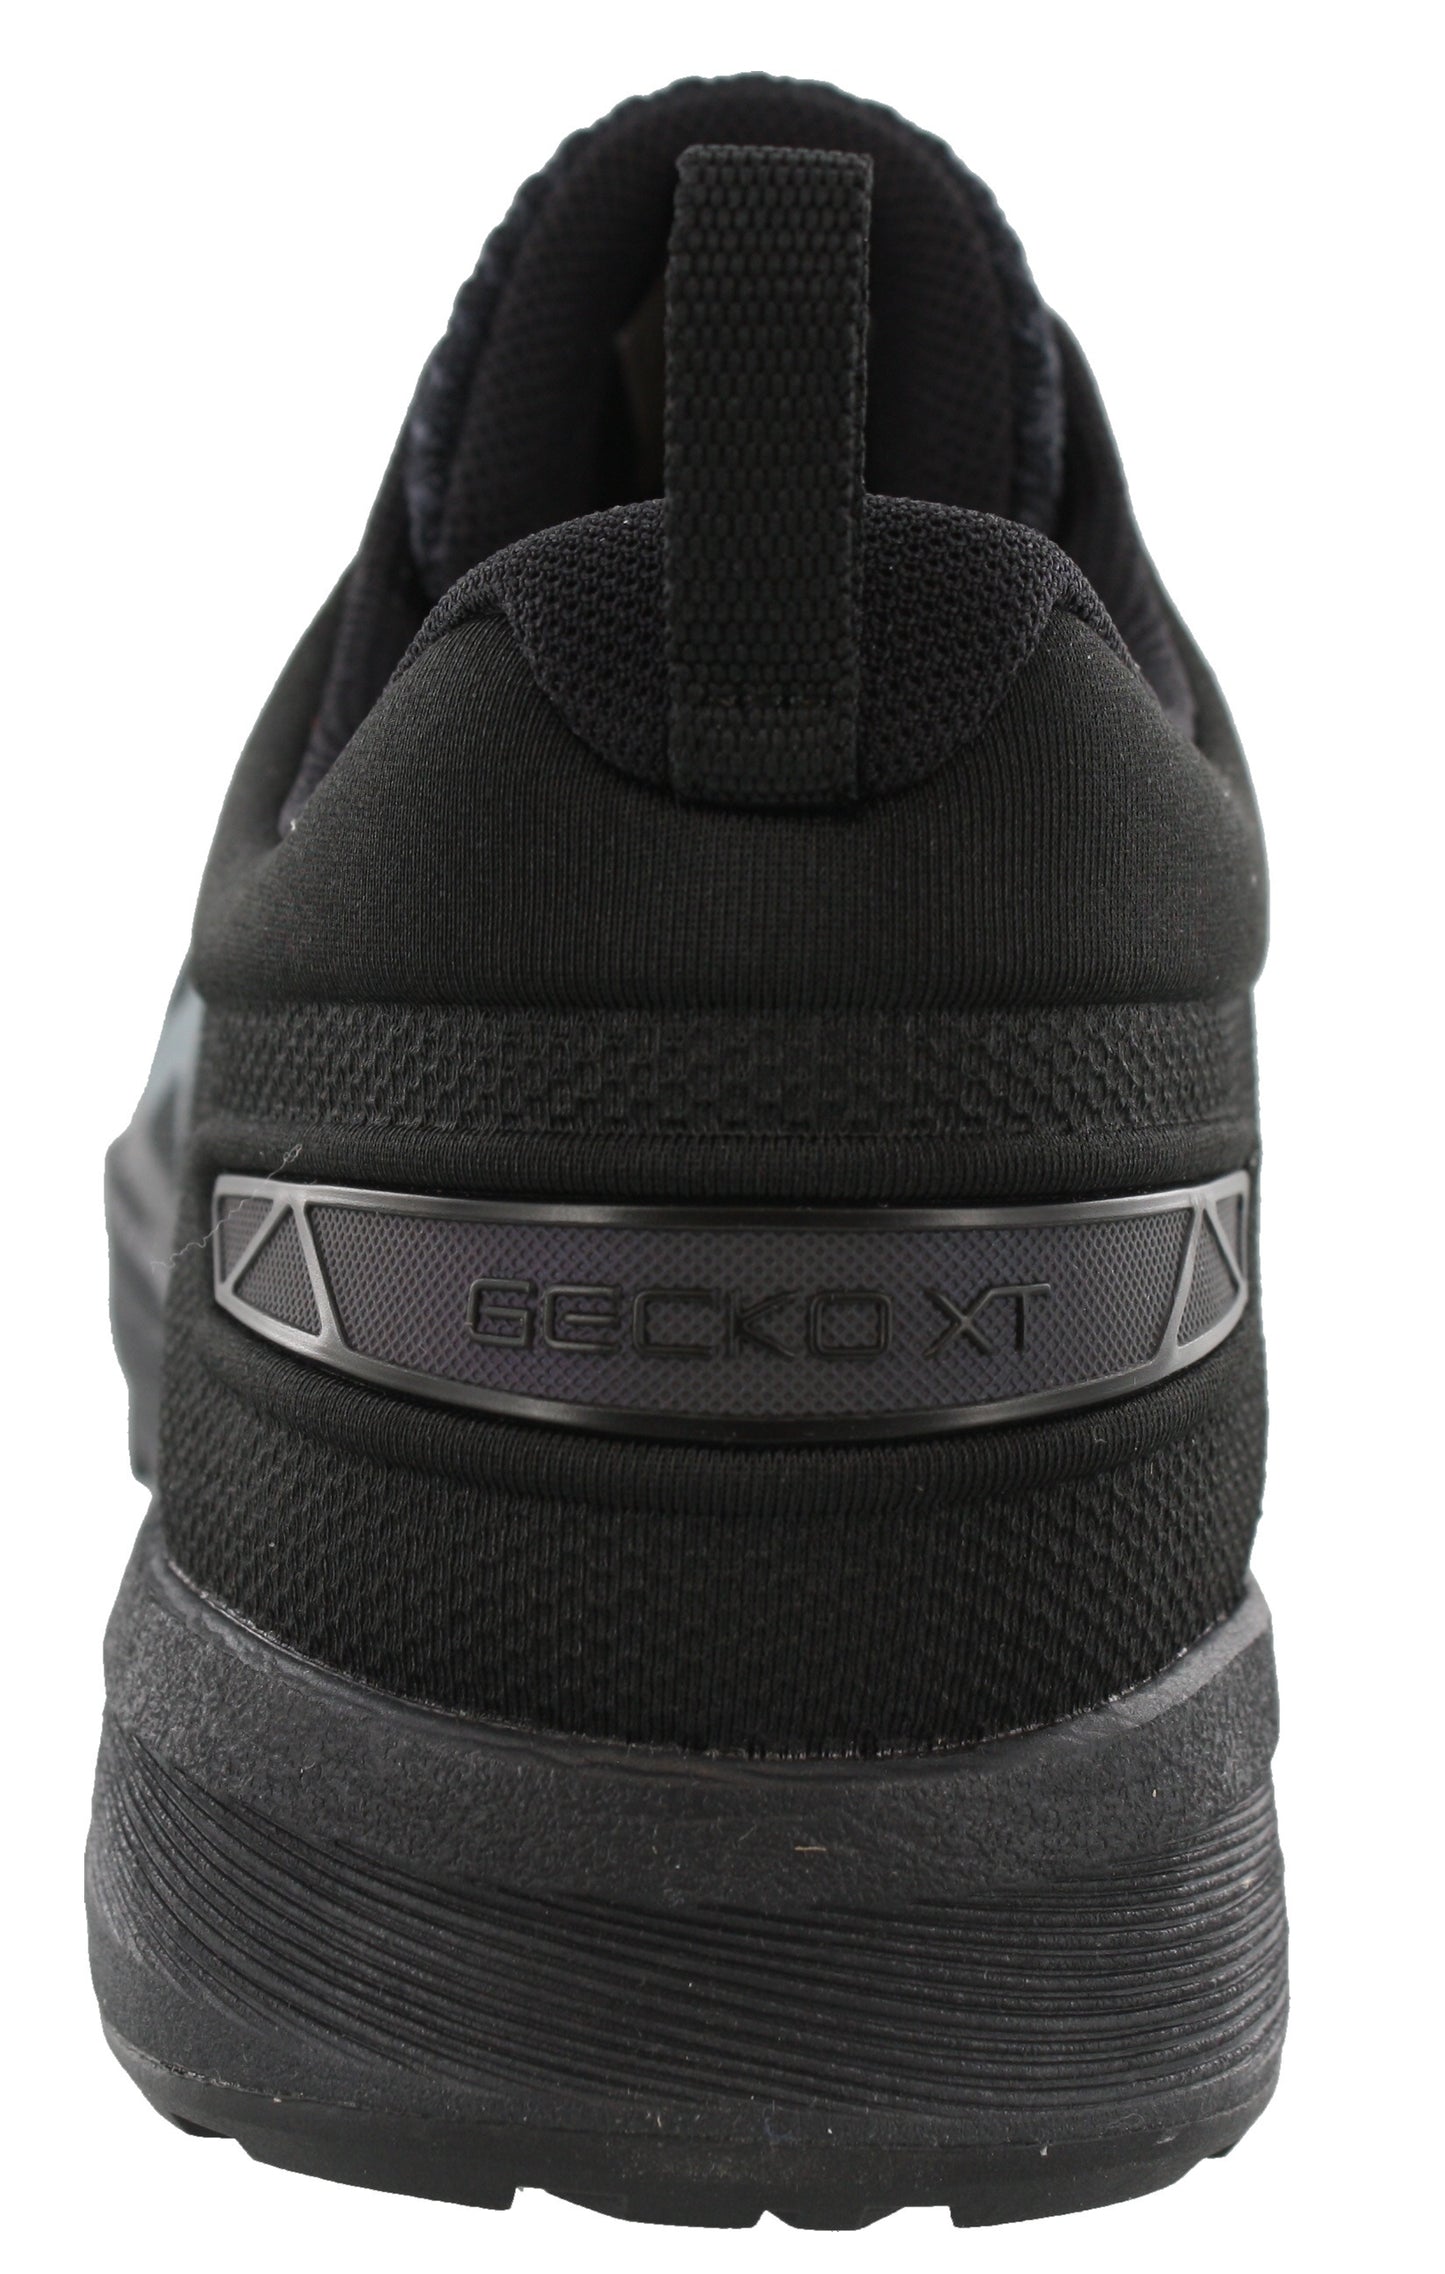 
                  
                    Back of Phantom/Black/White ASICS Shoes running Gecko XT - Men
                  
                